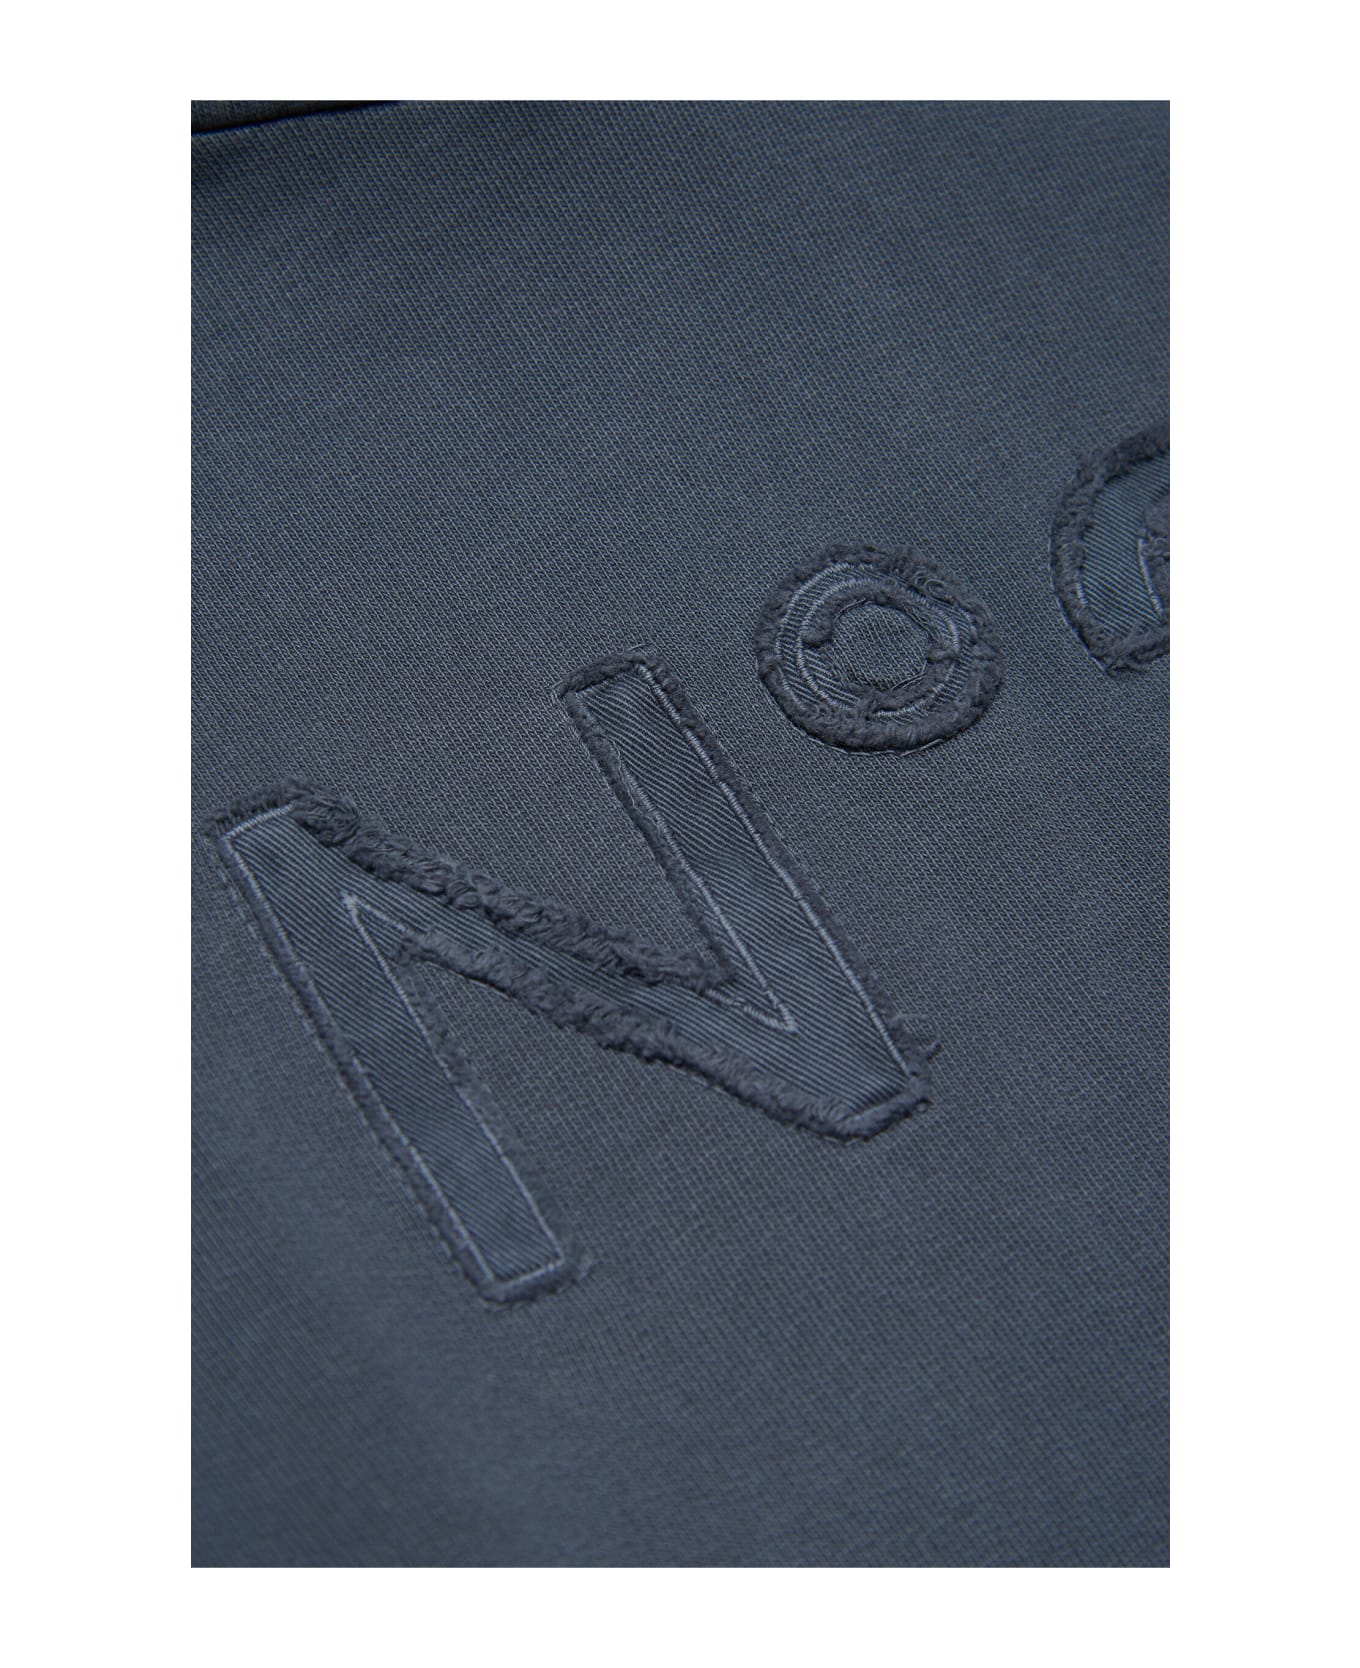 N.21 N21s165u Over Sweat-shirt N°21 Grey Vintage-effect Hooded Sweatshirt With Textured Logo - Dark grey